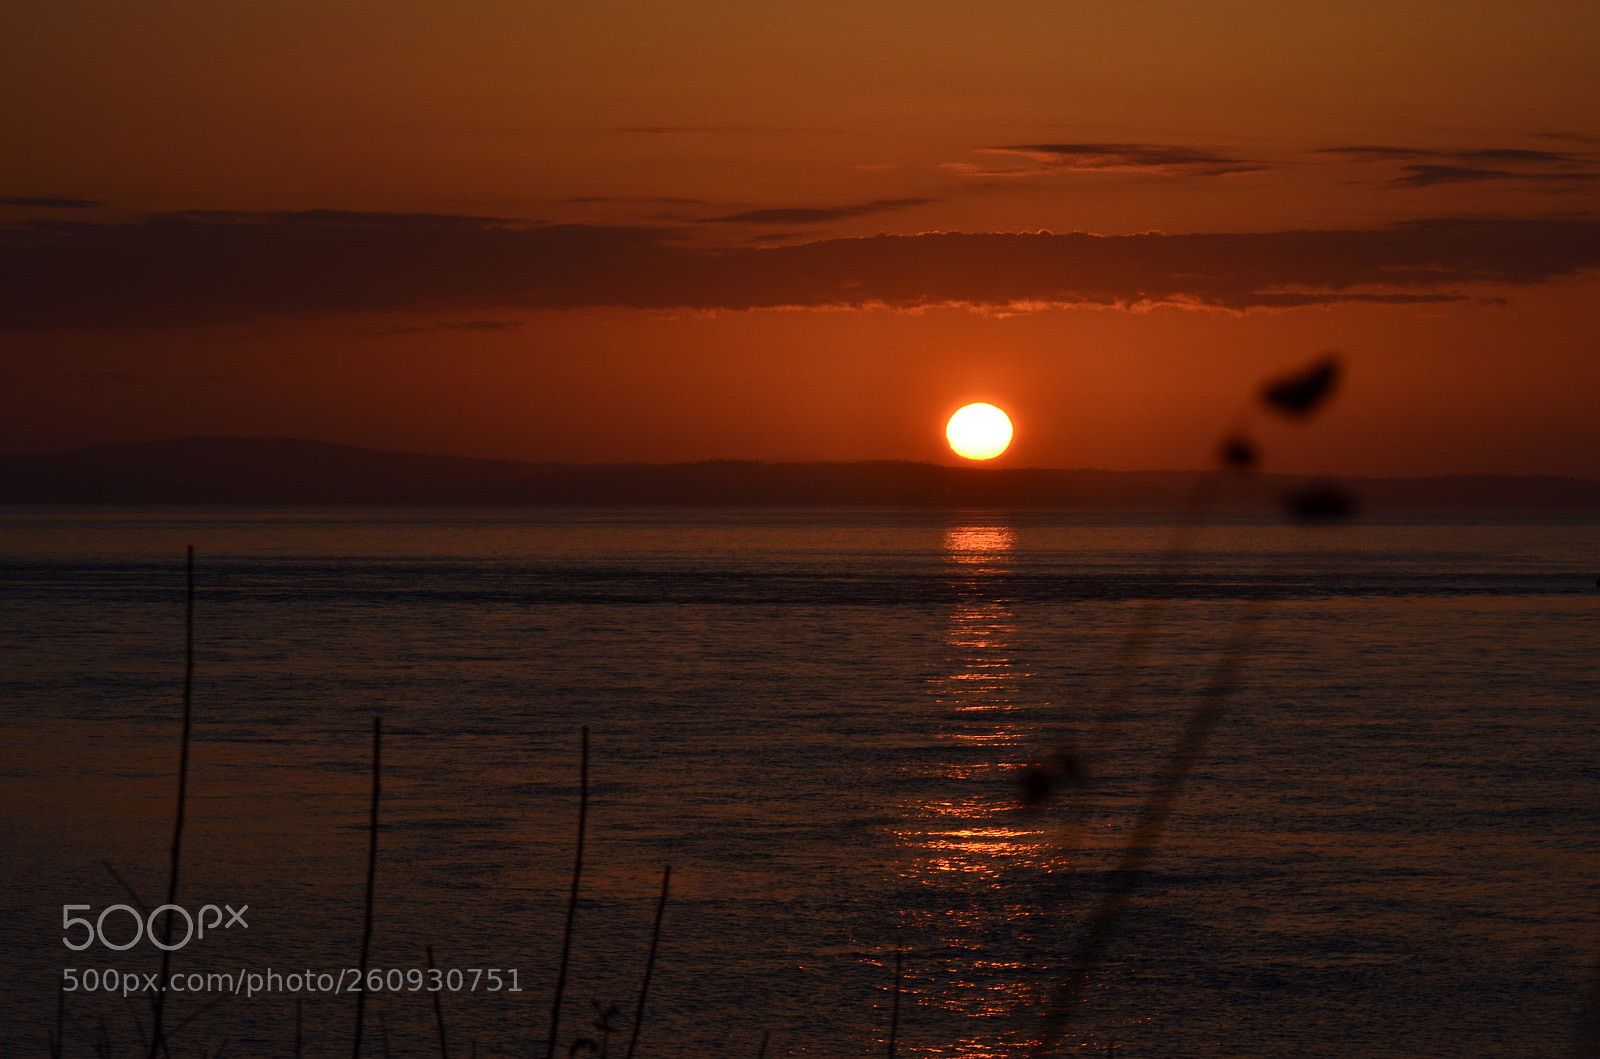 Nikon D5100 sample photo. Golden sunset photography